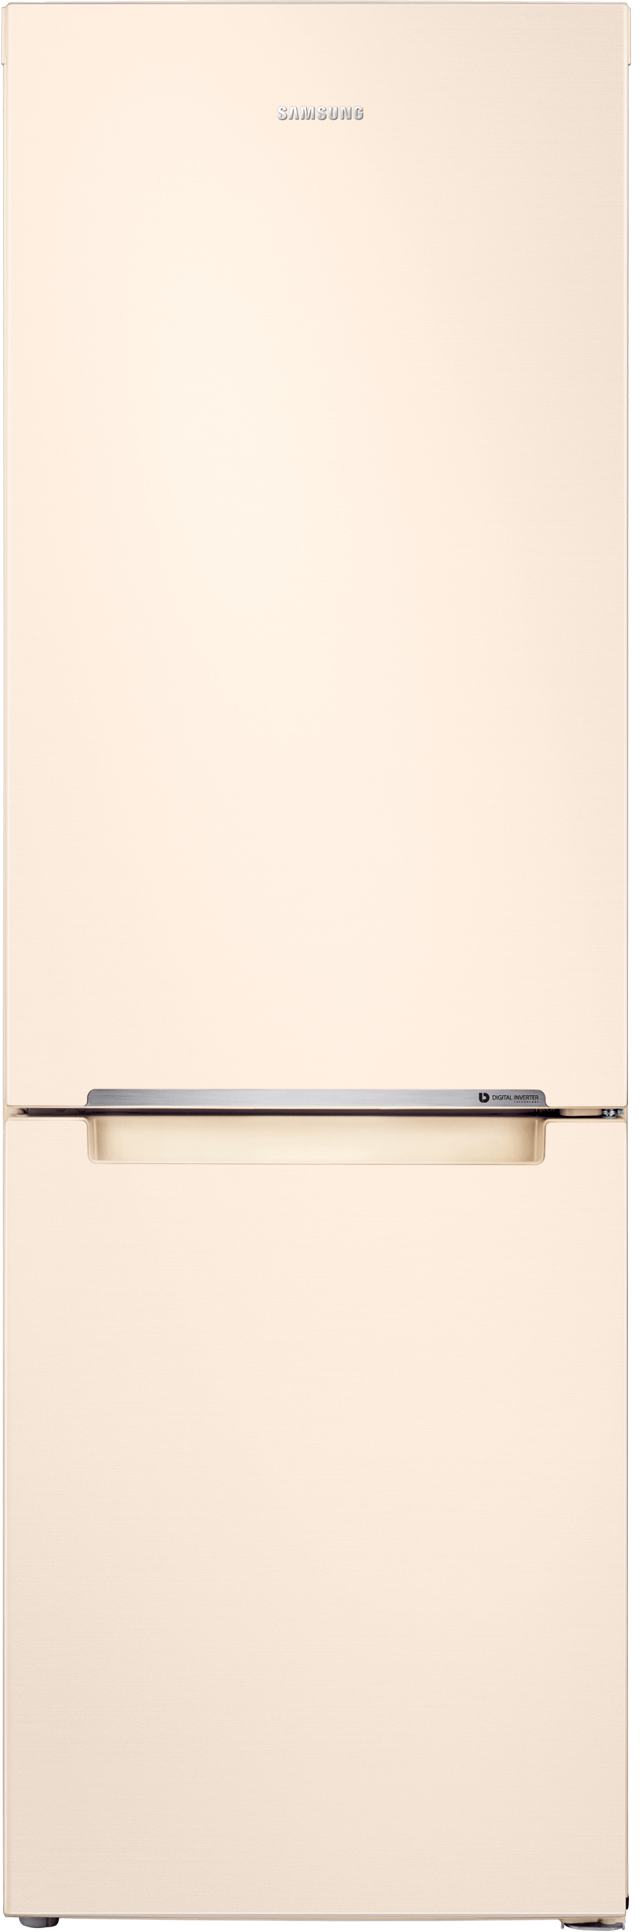 Холодильник Samsung RB33J3000EL/UA в интернет-магазине, главное фото